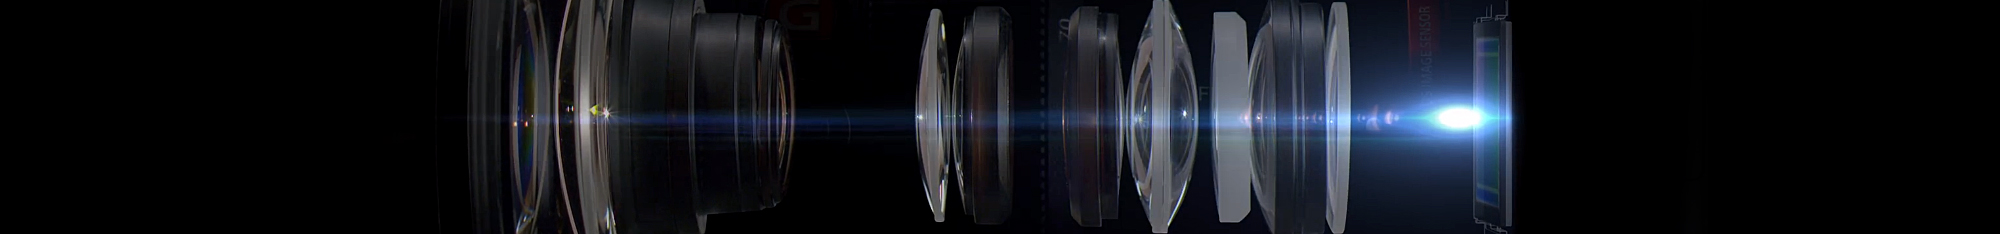 FE 24-70mm F2.8 GM Optical Design 光学設計のこだわり